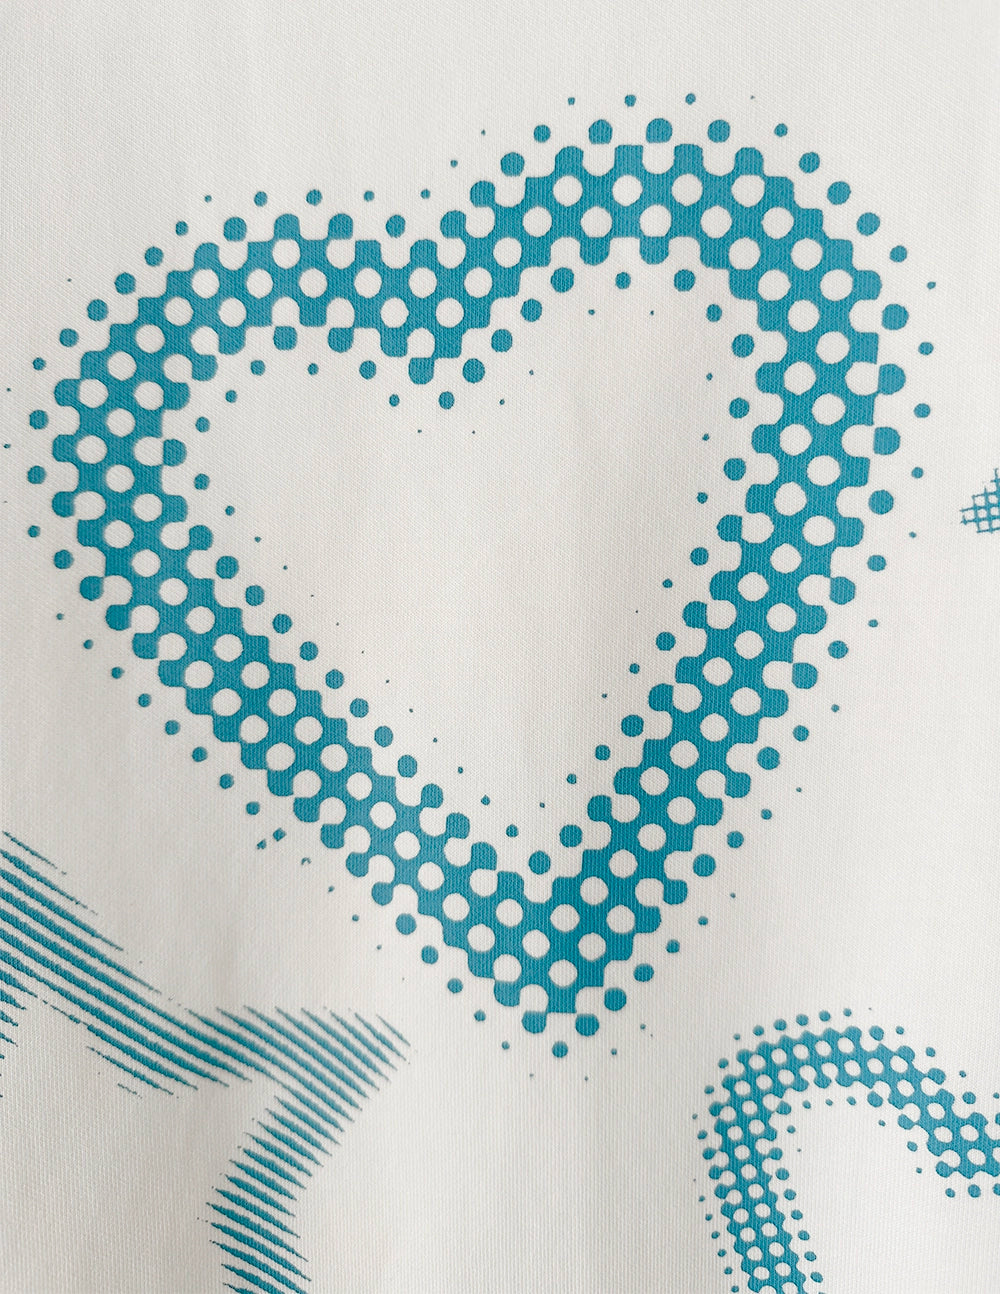 Jirai Kei Blue Cross Love T-Shirt Unisex Top 5Colors 29244:340522